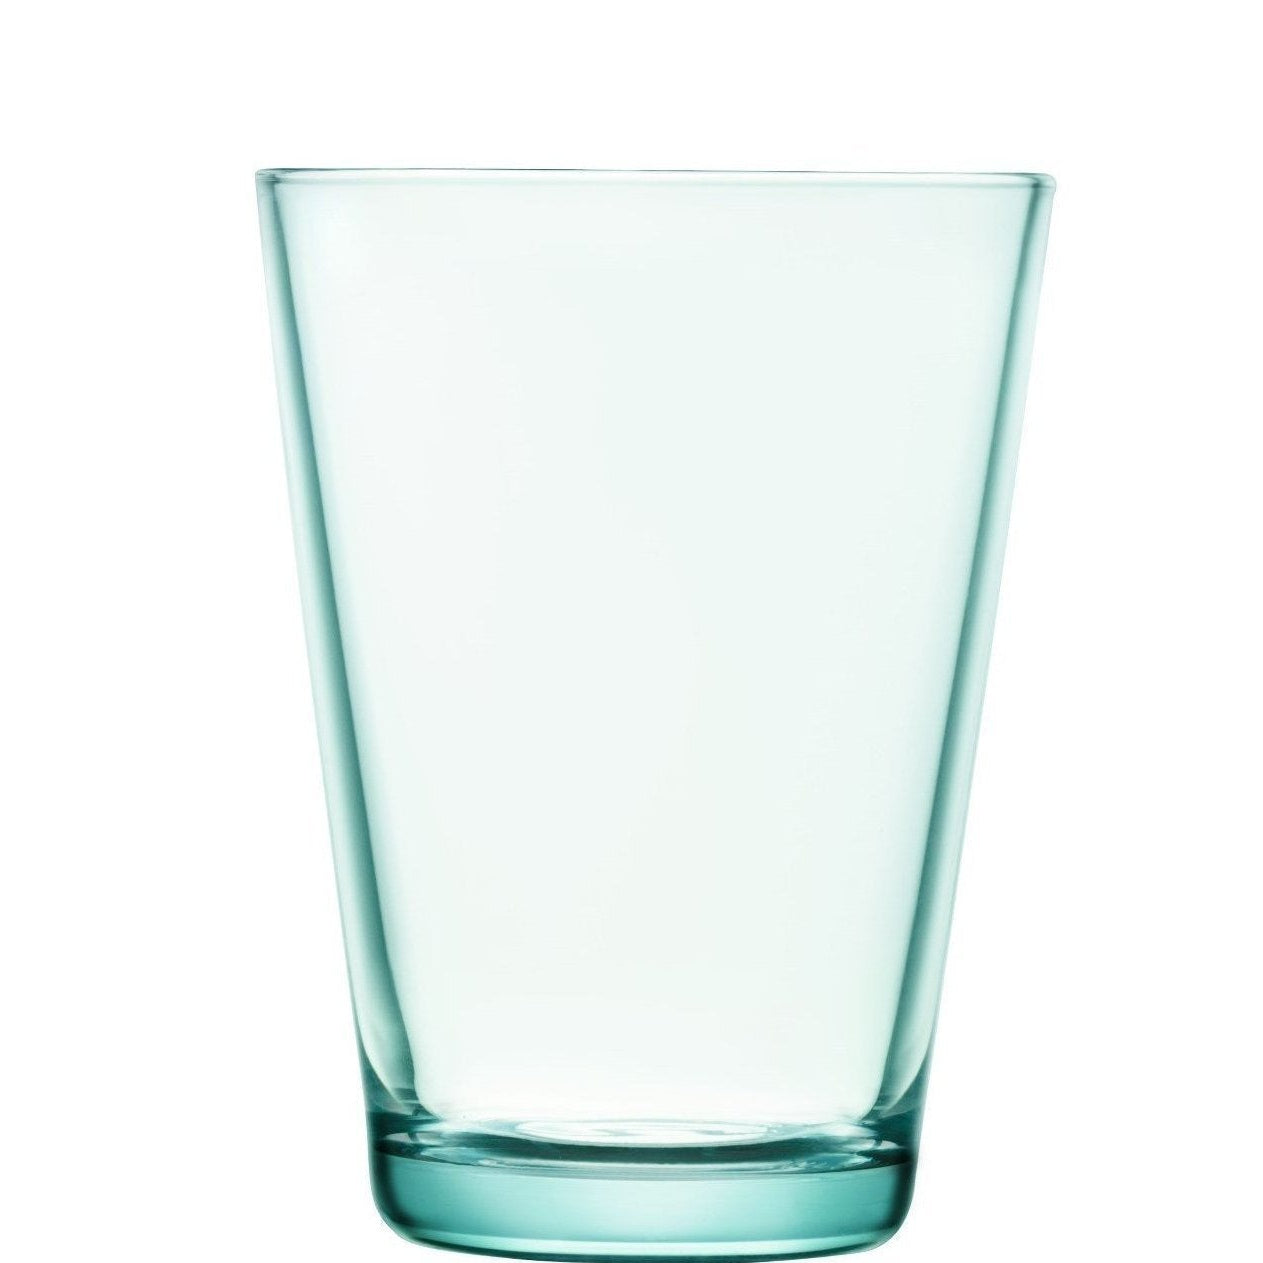 Iittala Cartio glass vanngrønn, 40cl